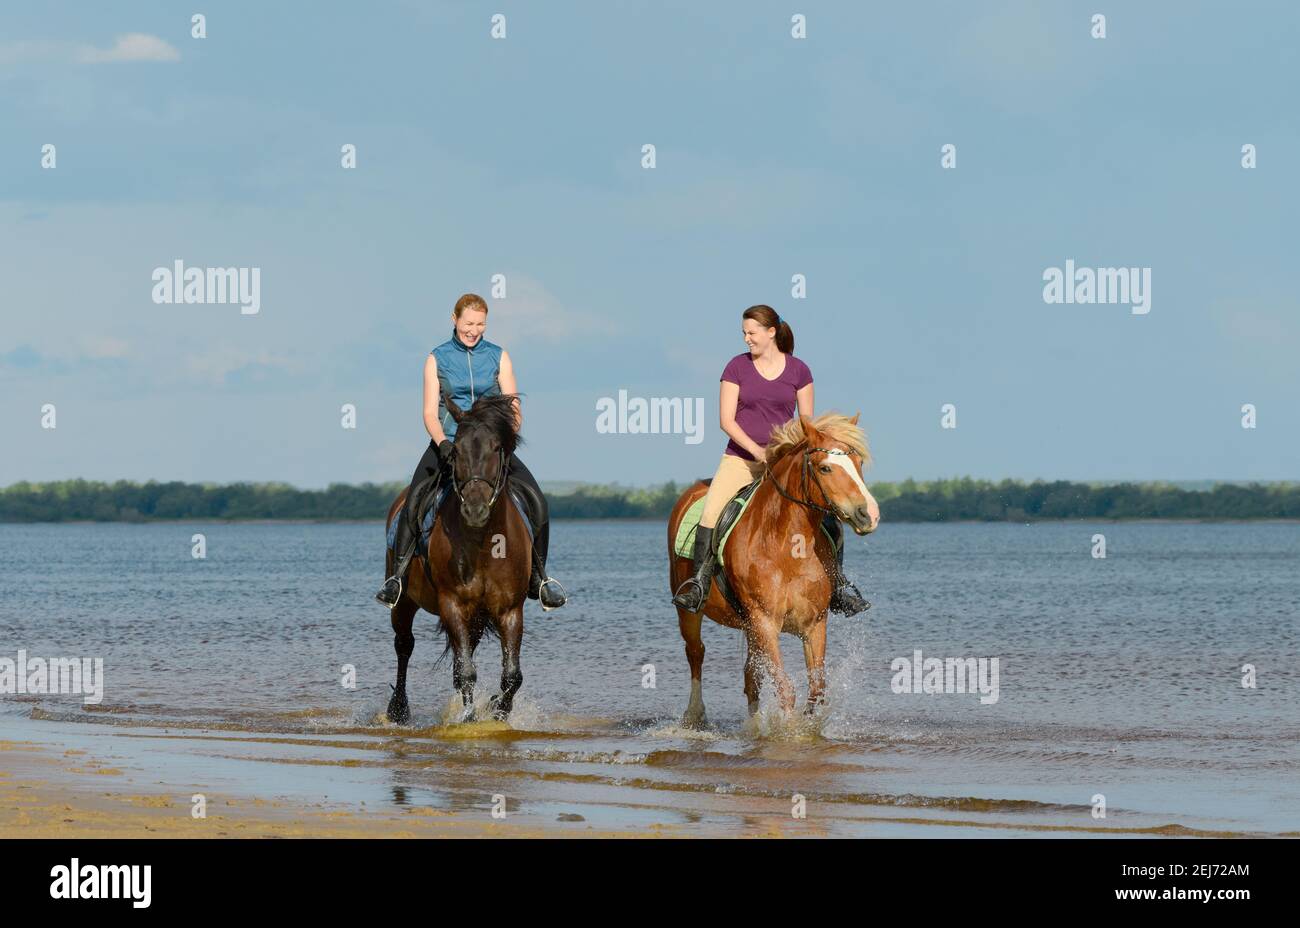 Dos mujeres están montando a caballo en el agua. Dos jinete de la mujer riendo están montando a caballo en el aire libre. Foto de stock